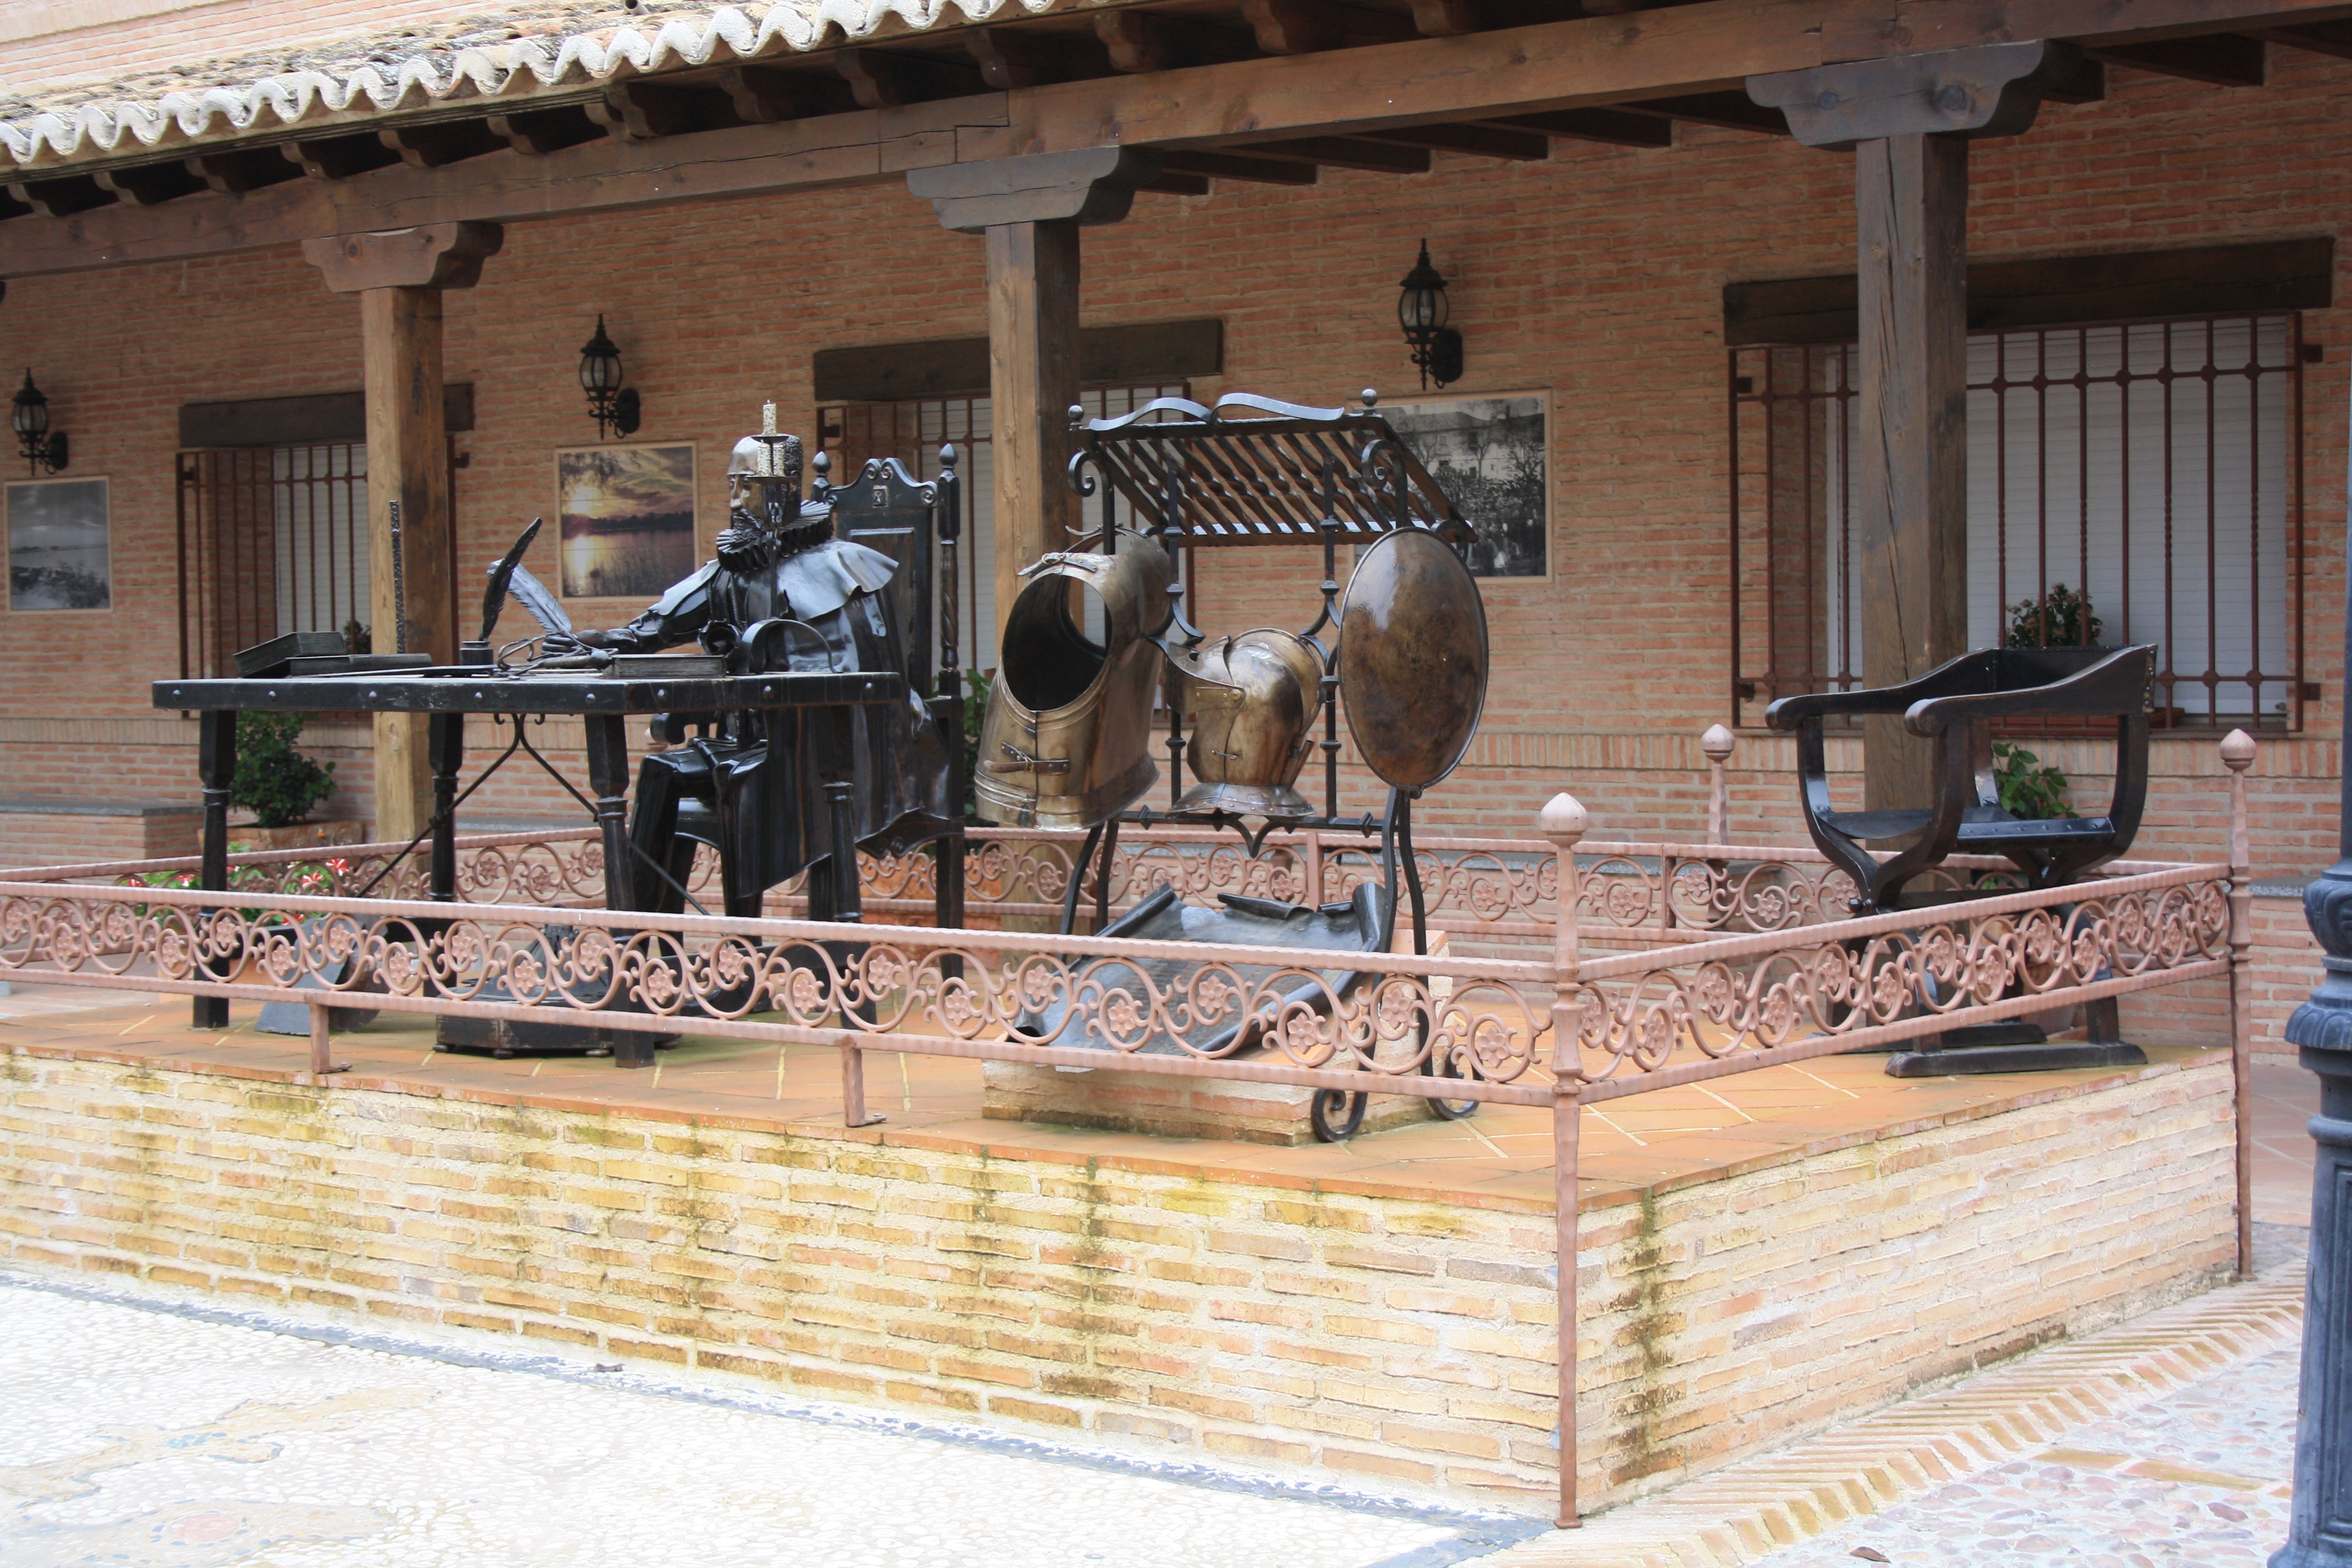 Foto: "Monumento a Cervantes". Exmo. Ayto. de Villafranca de los Caballeros - Villafranca de los Caballeros (Toledo), España